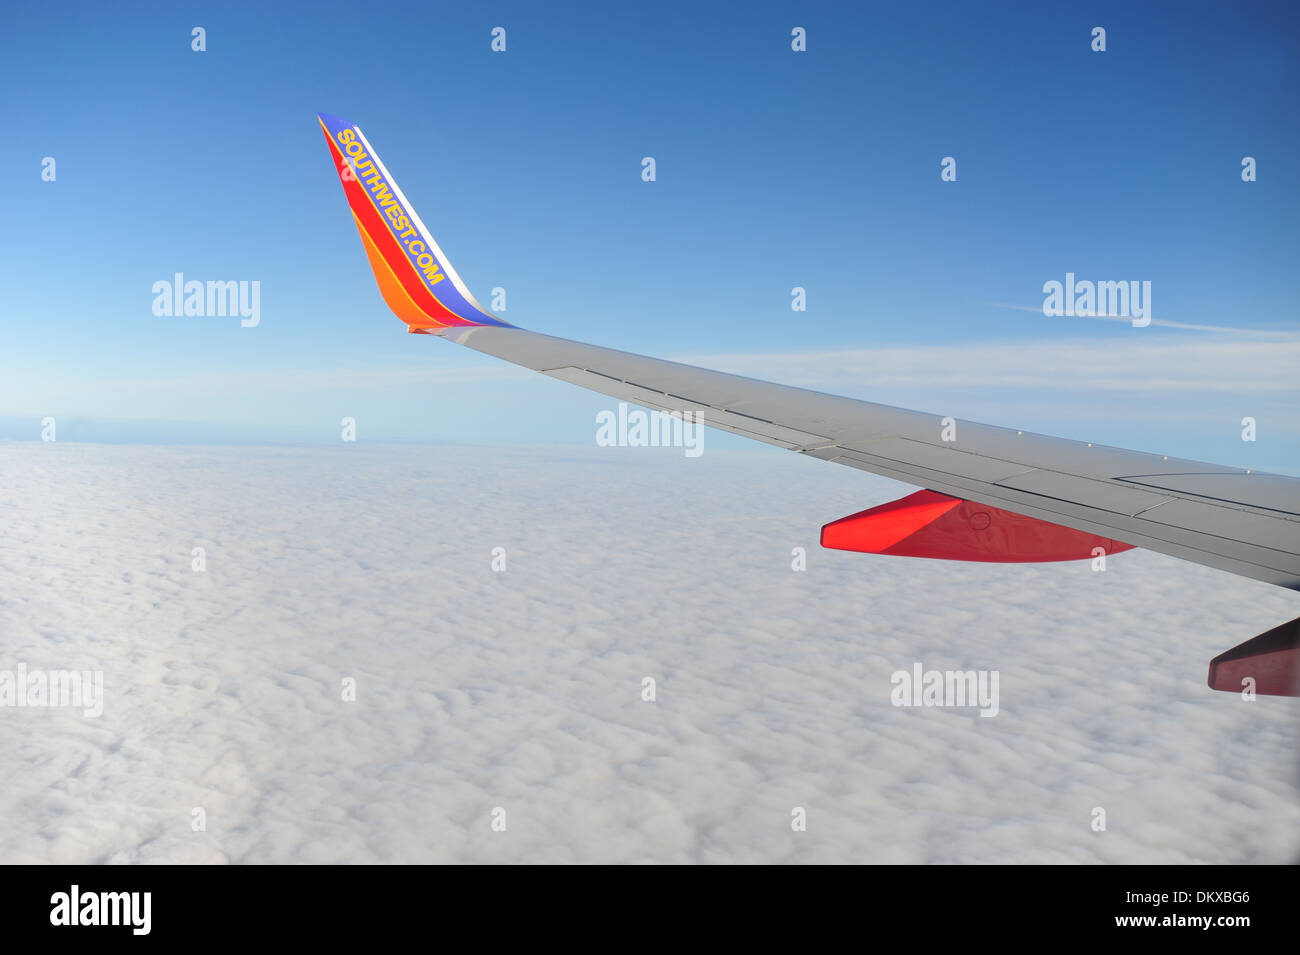 Aile de Southwest Airlines avec winglet sur l'aile d'avion à réaction Boeing 737-700 en vol au dessus des nuages Banque D'Images